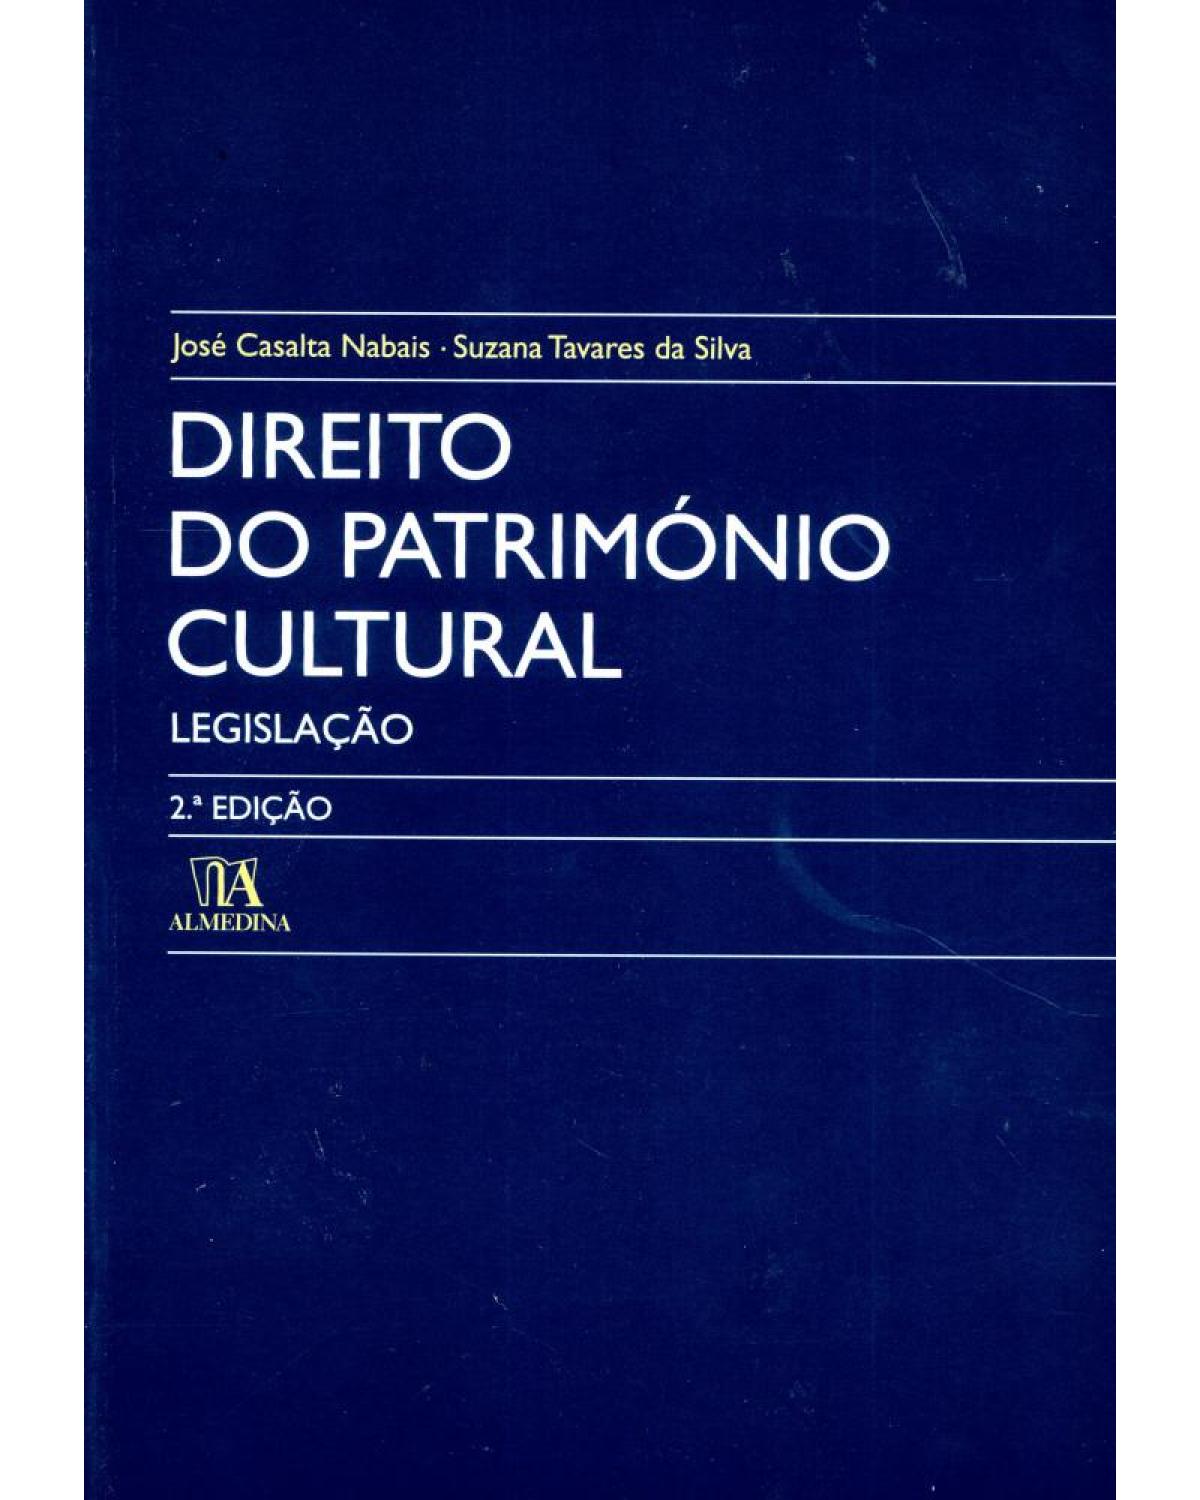 Direito do património cultural - legislação - 2ª Edição | 2006